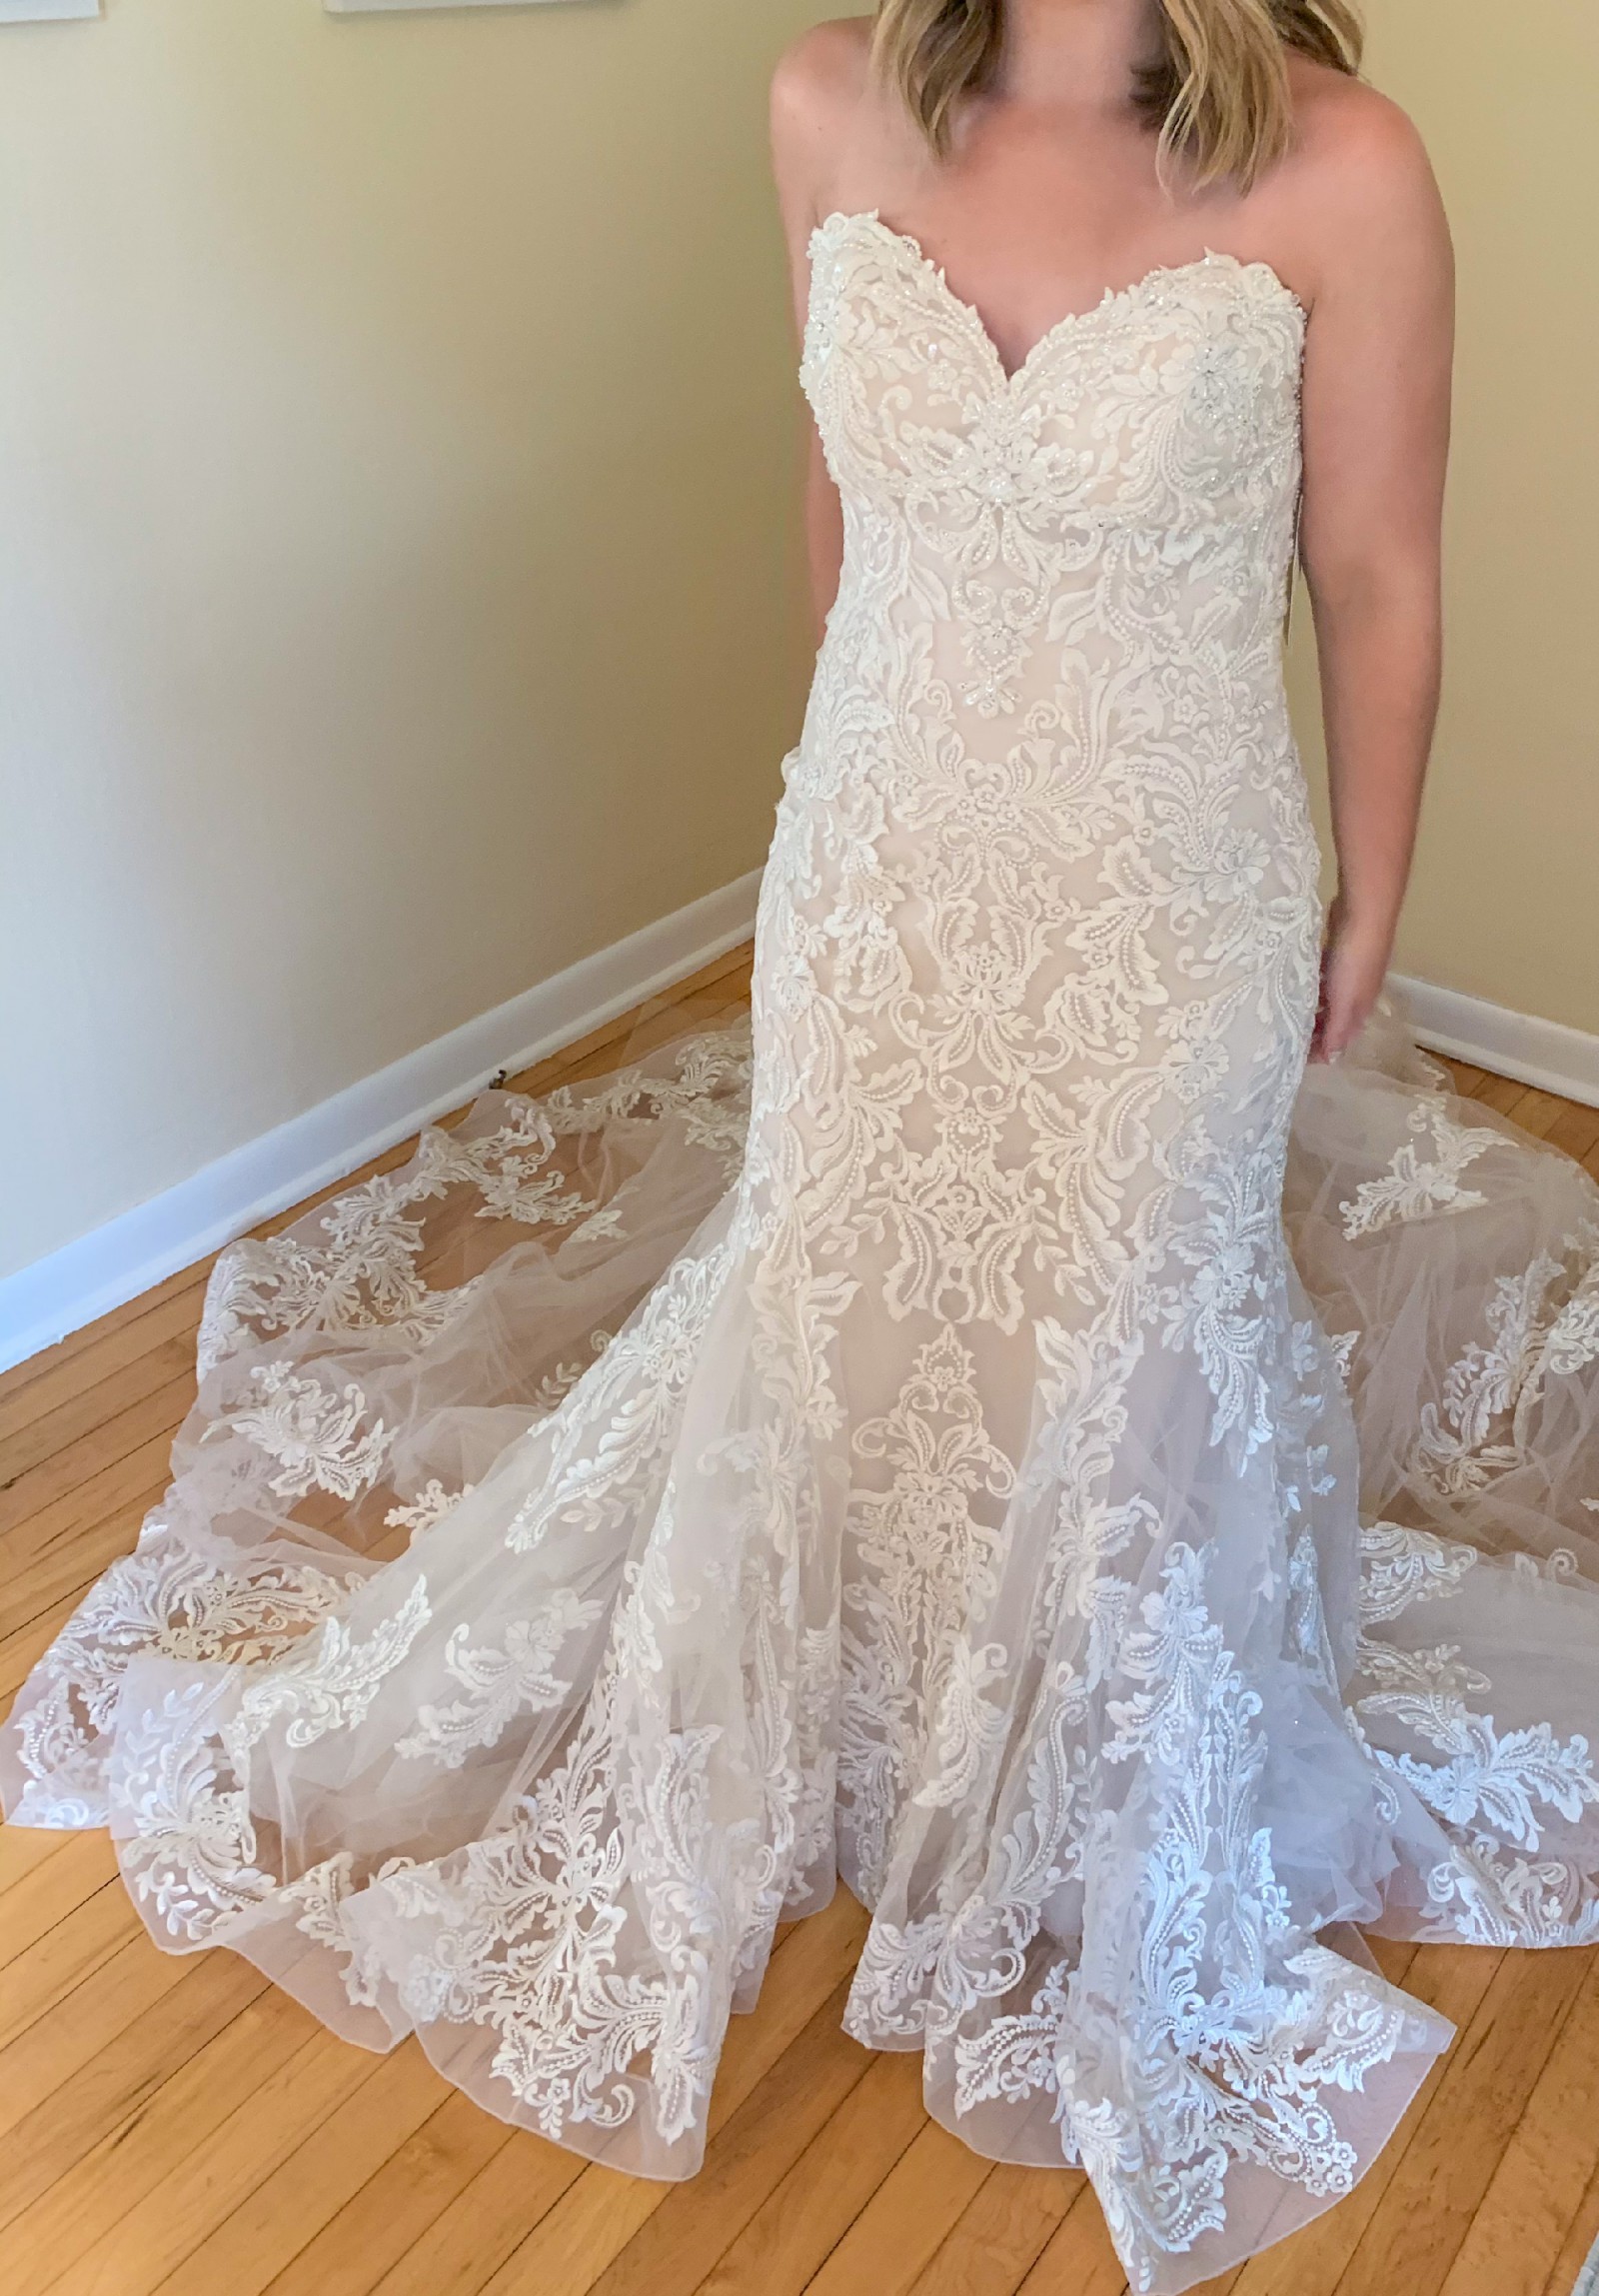 Morilee Rochelle Sample Wedding Dress Save 8   Stillwhite